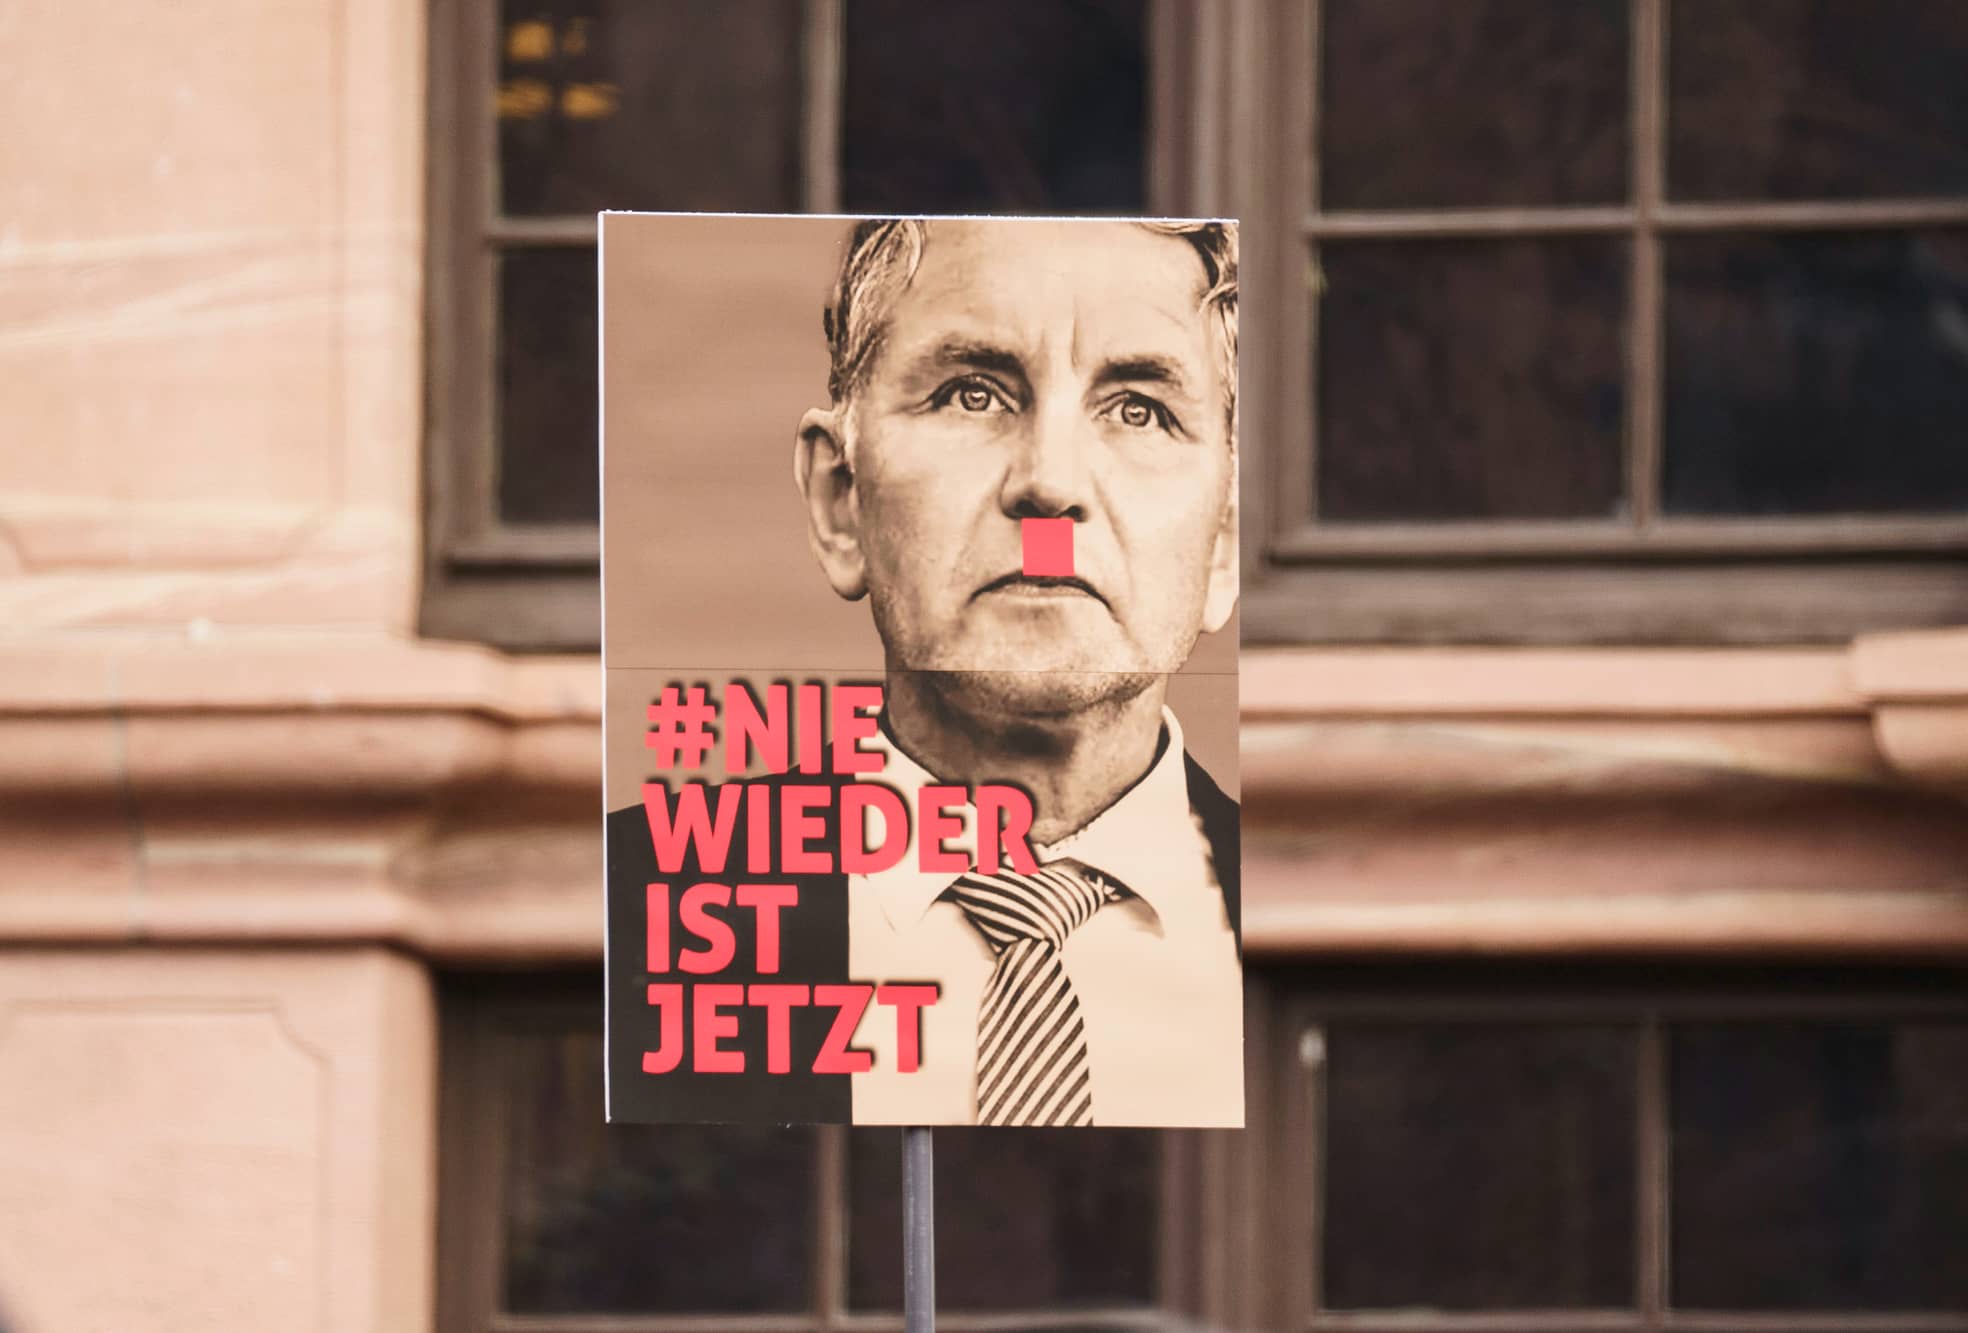 Plakat bei einer Demonstration gegen Rechtsextremismus in Frankfurt am 20. Januar.